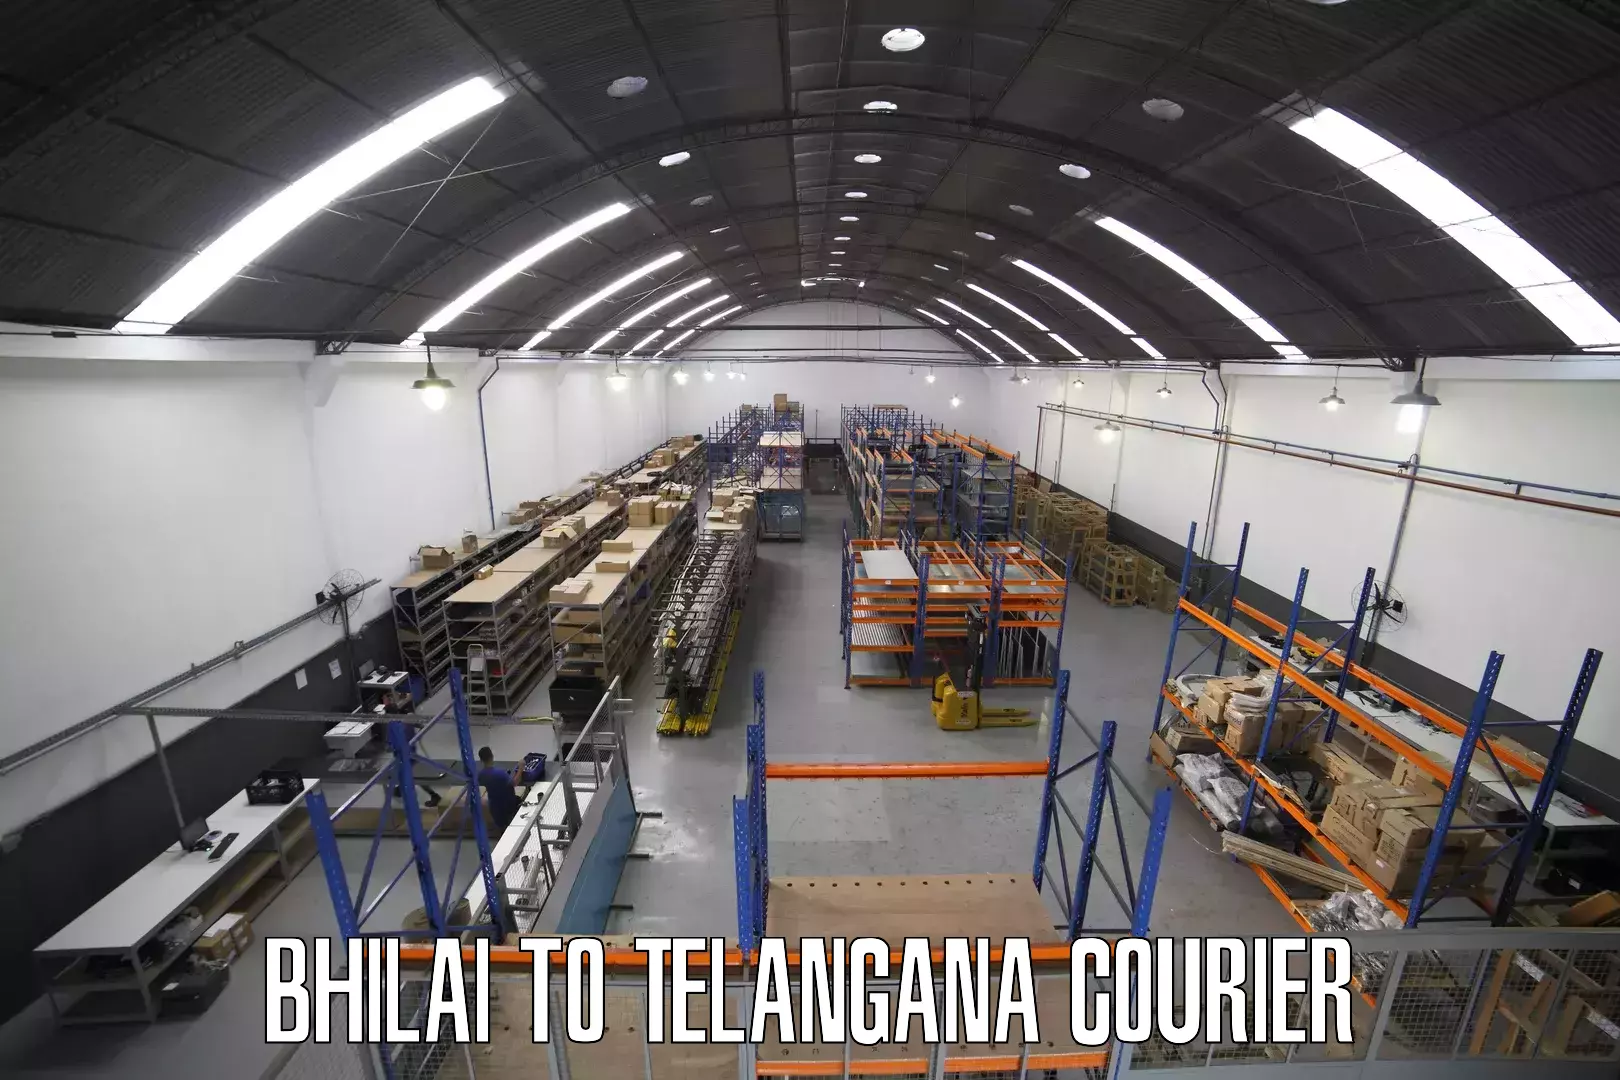 Cargo courier service Bhilai to Wyra